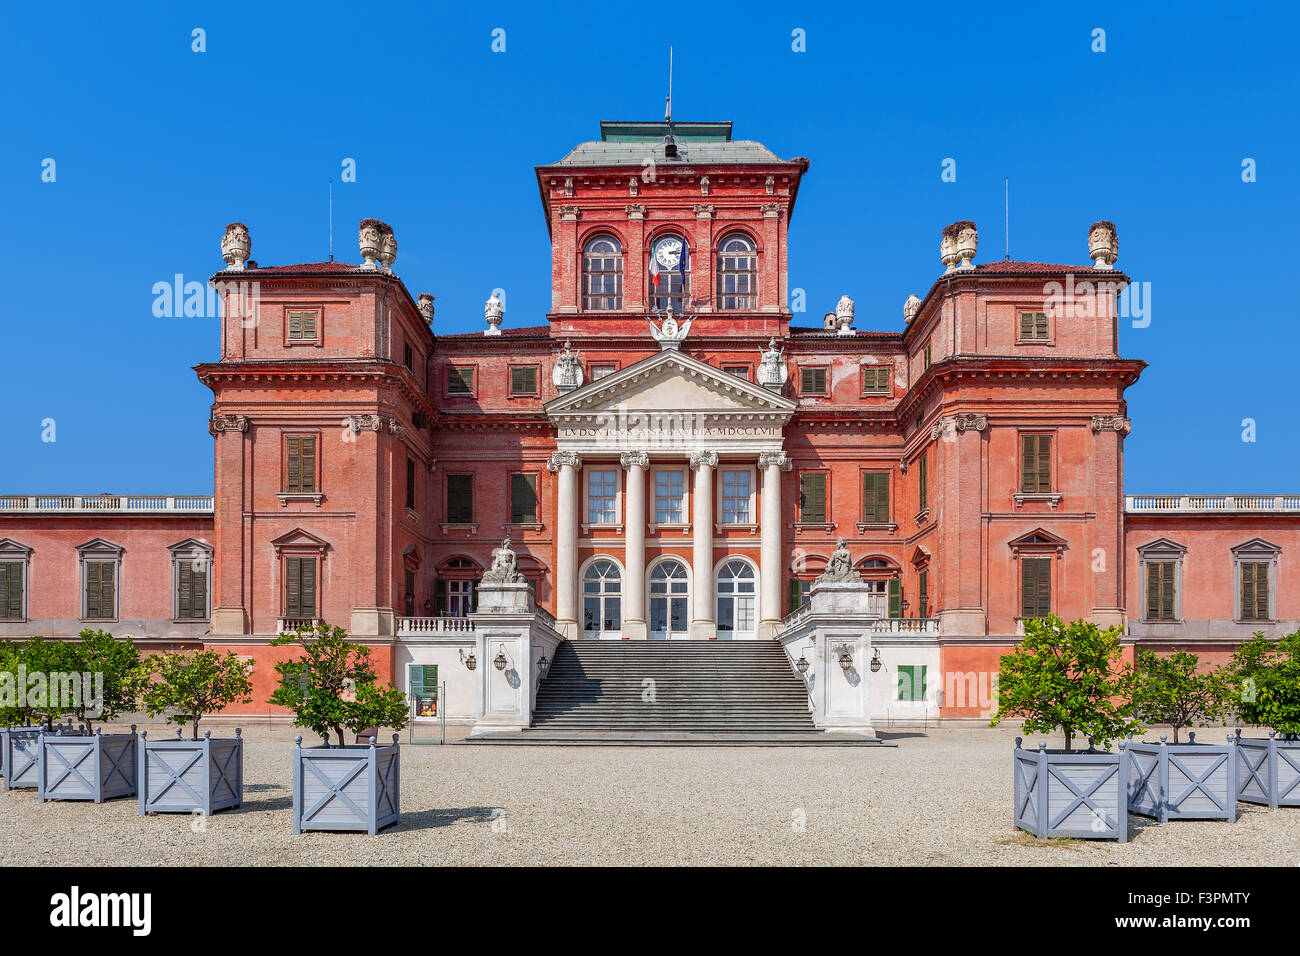 La facciata della reggia di Racconigi - ex residenza reale di casa Savoia in Piemonte, Italia settentrionale. Foto Stock